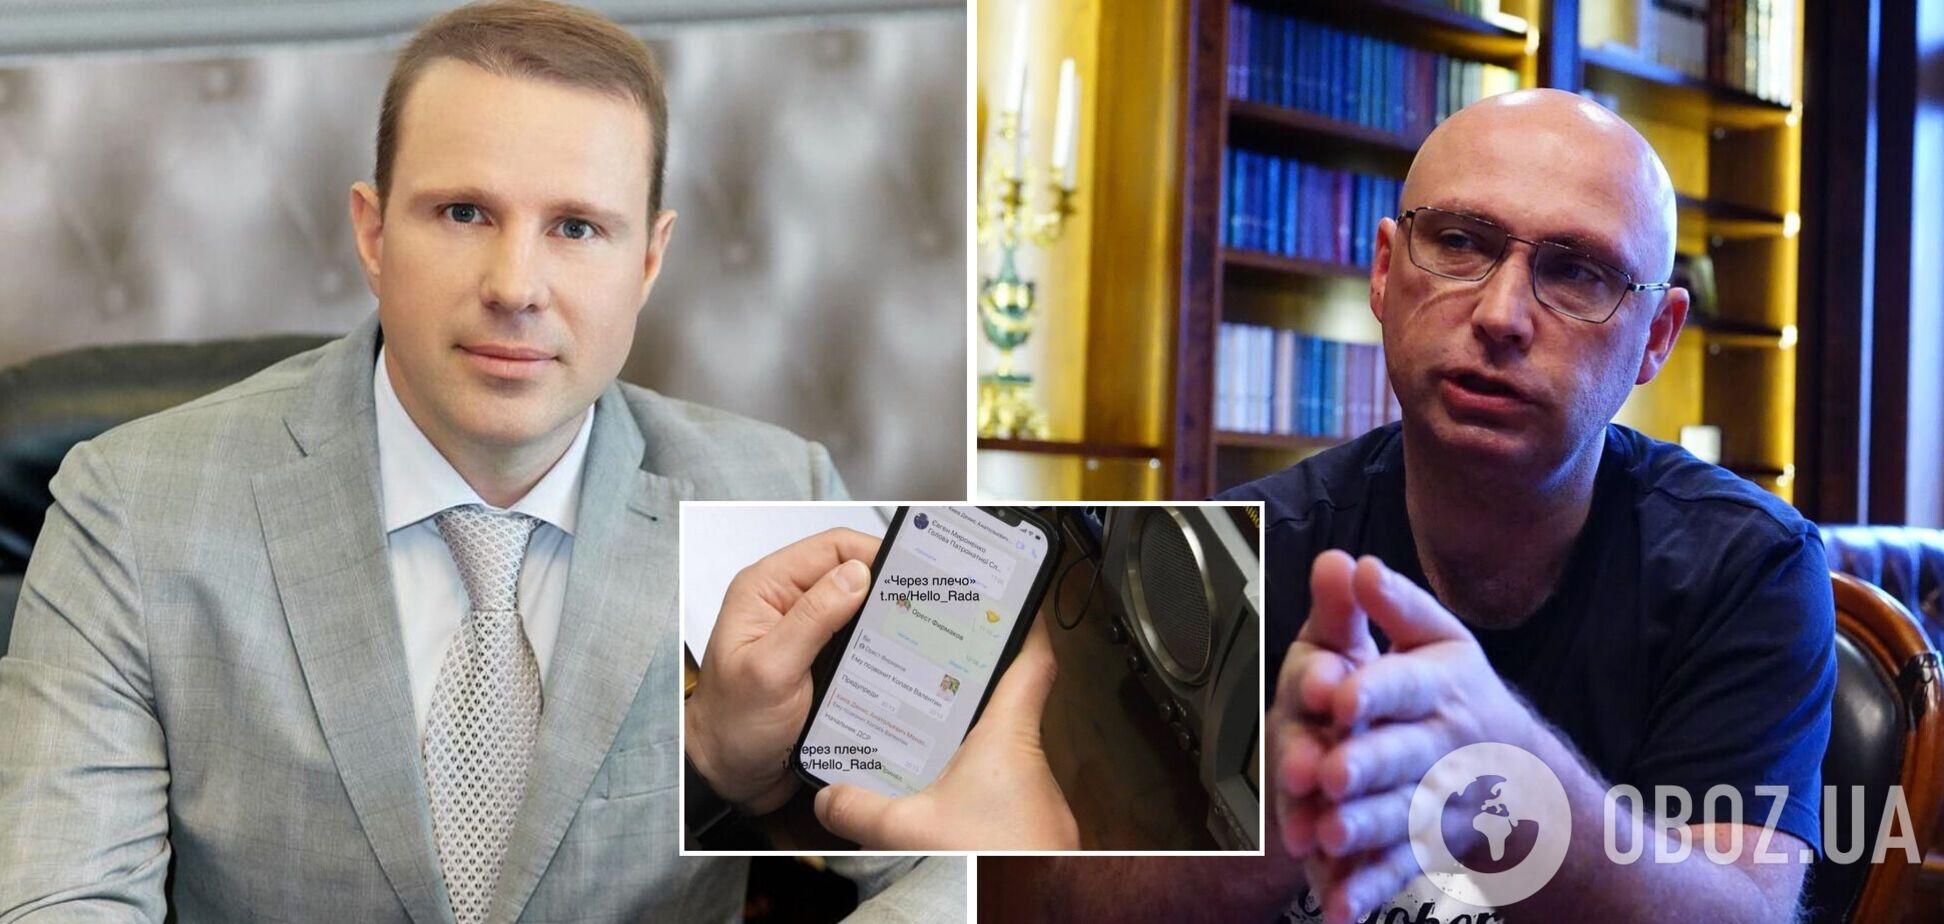 Сергей Минько (слева) поделился контактами Ореста Фирманюка (справа)